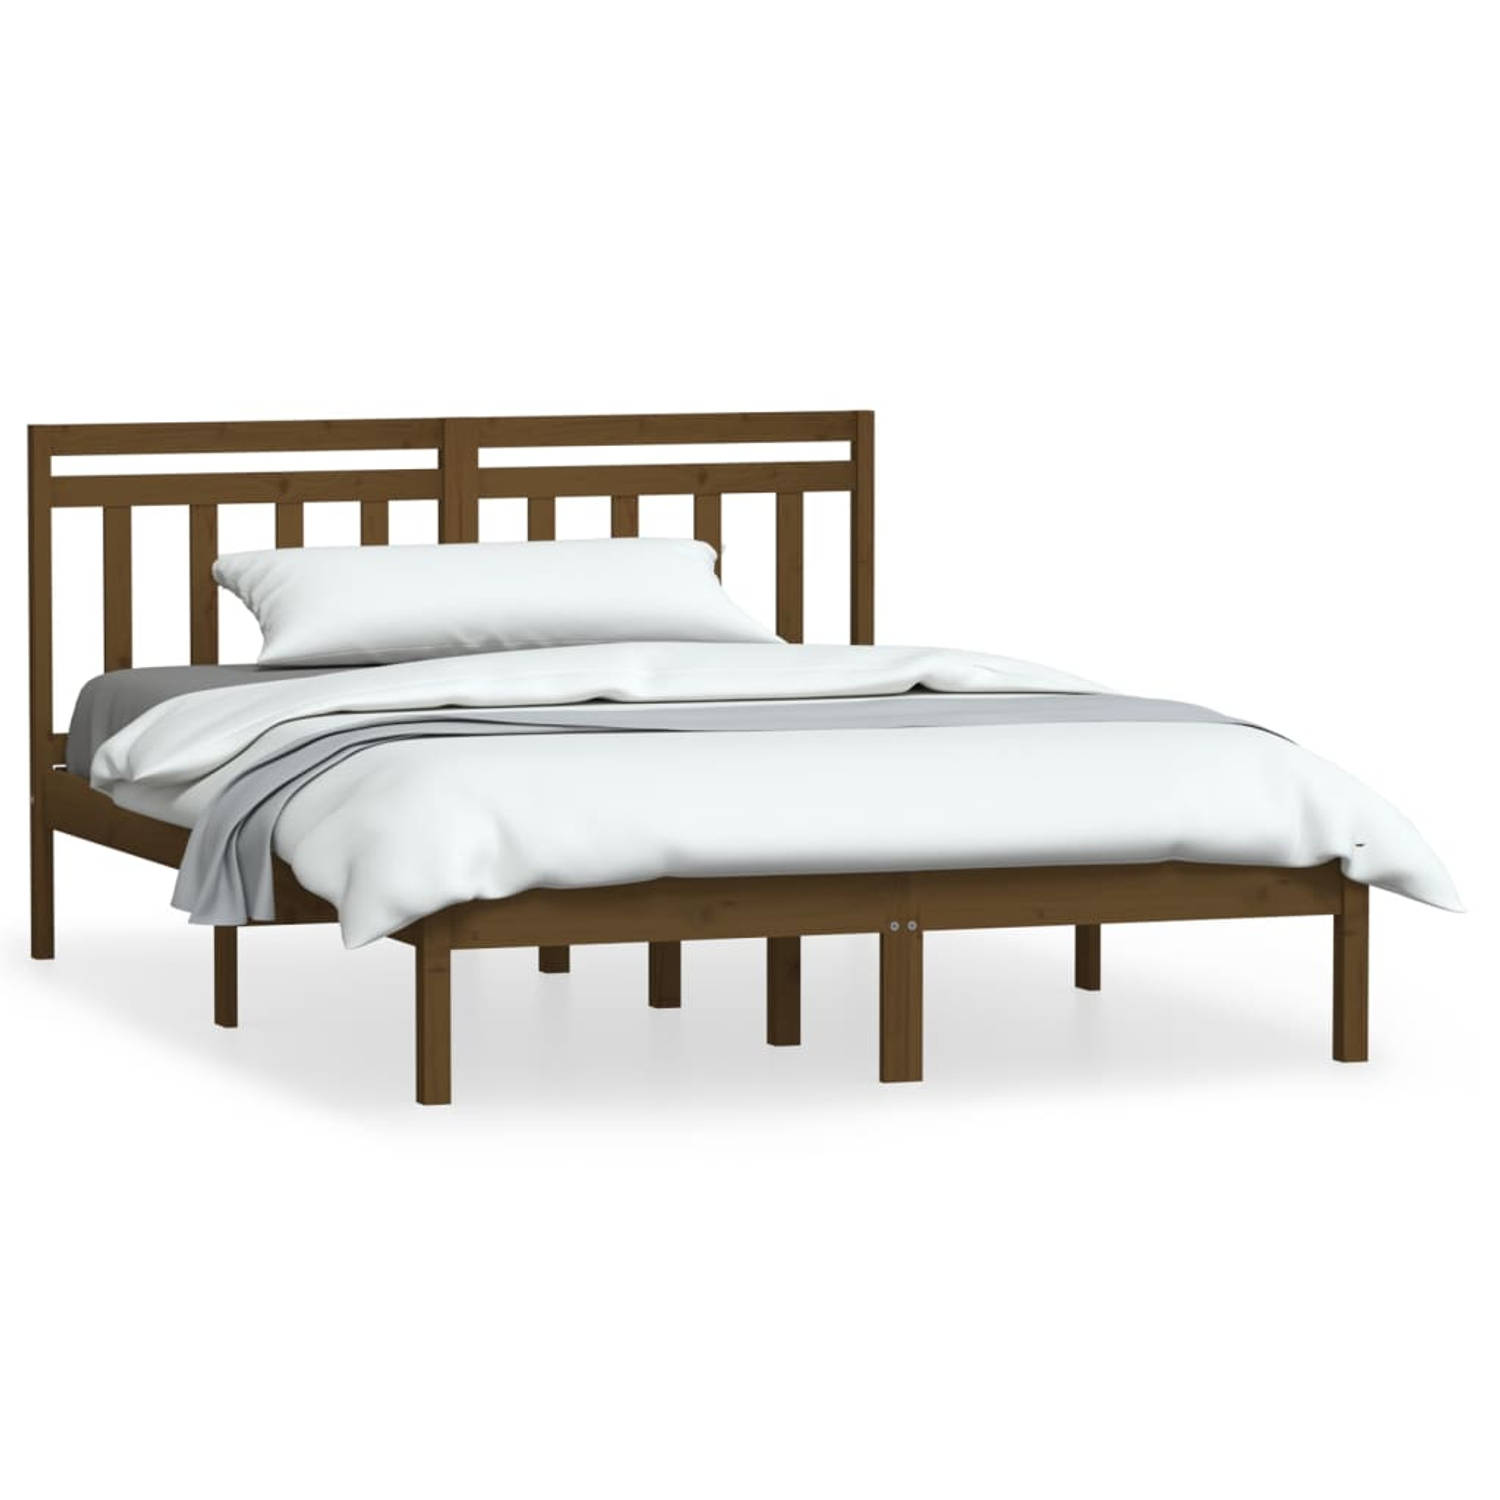 The Living Store Bedframe massief hout honingbruin 150x200cm 5FT king size - Bedframe - Bedframes - Tweepersoonsbed - Bed - Bedombouw - Dubbel Bed - Frame - Bed Frame - Ledikant -